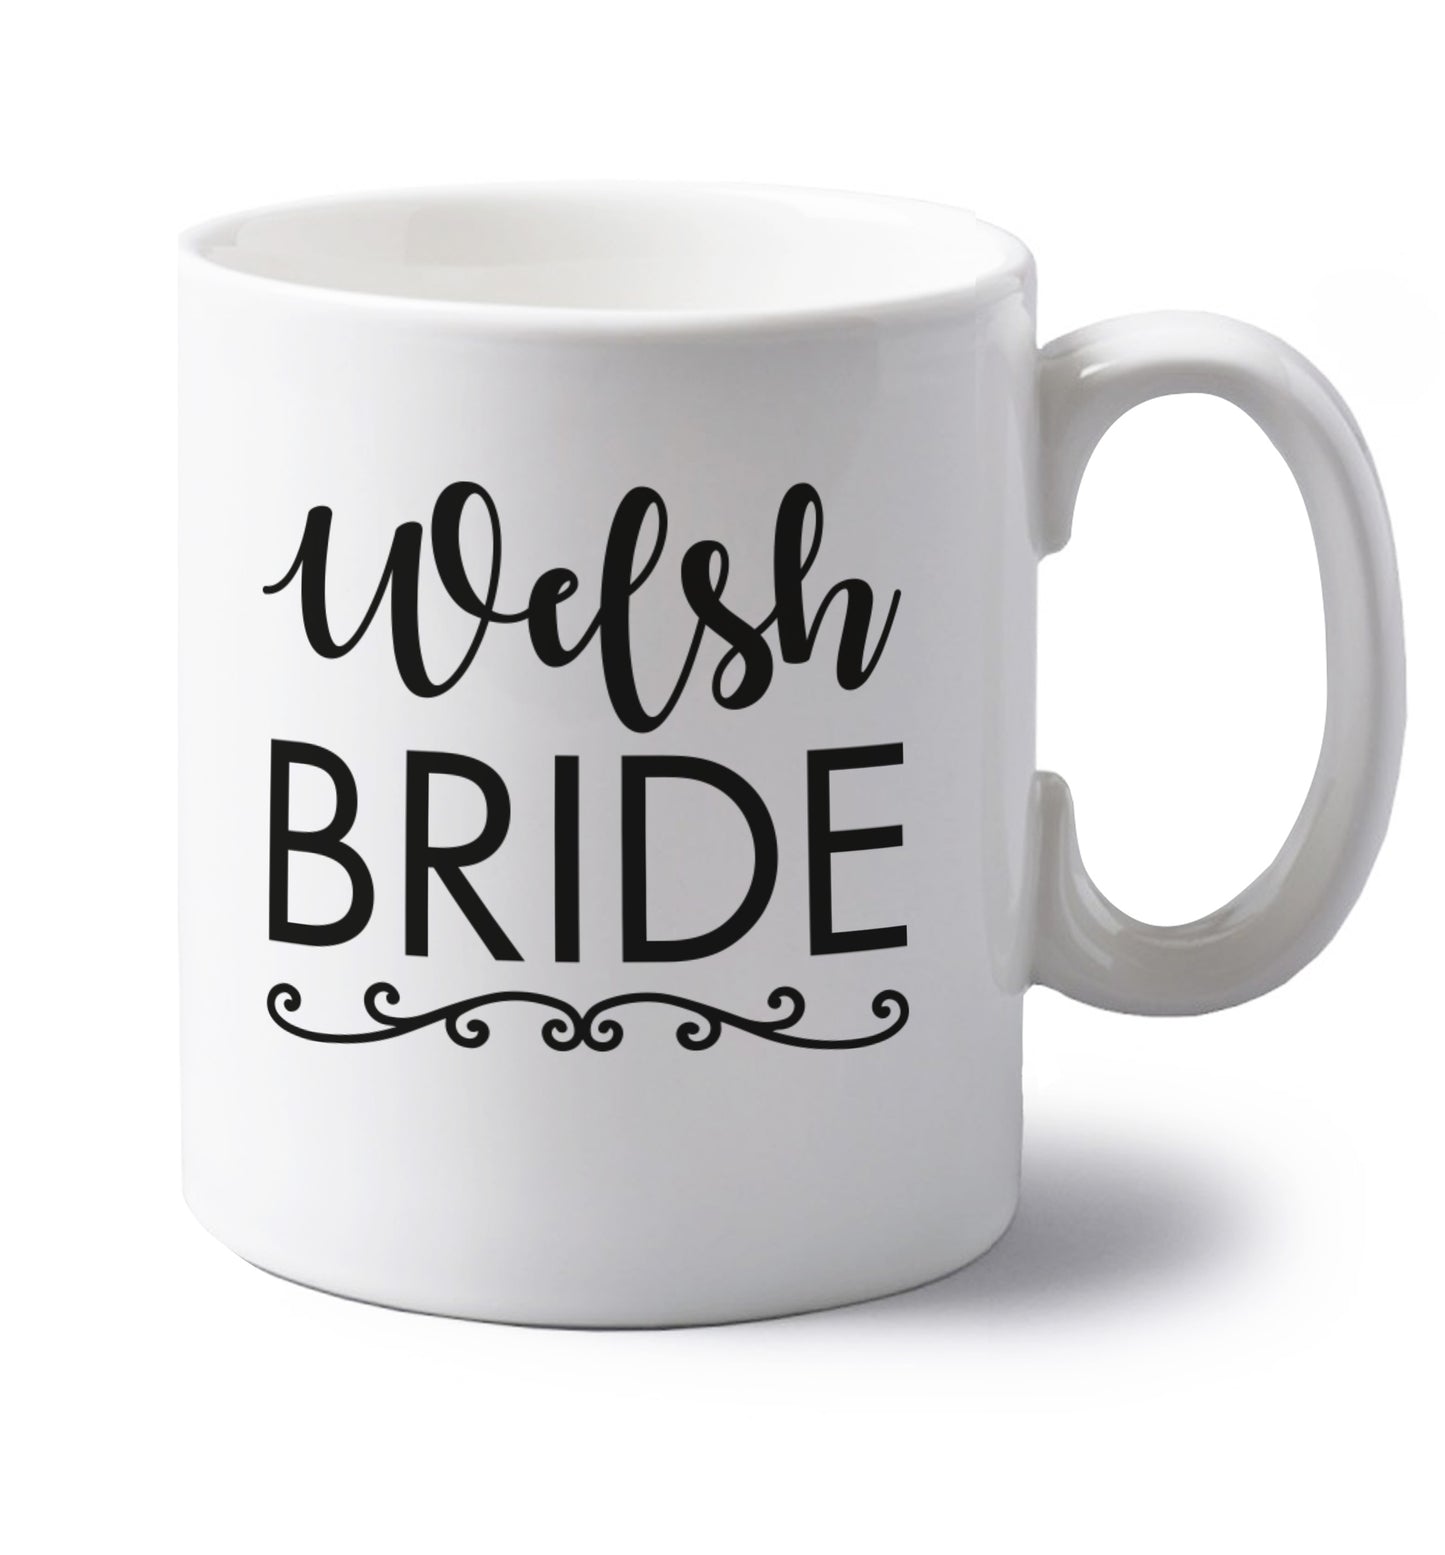 Welsh Bride left handed white ceramic mug 